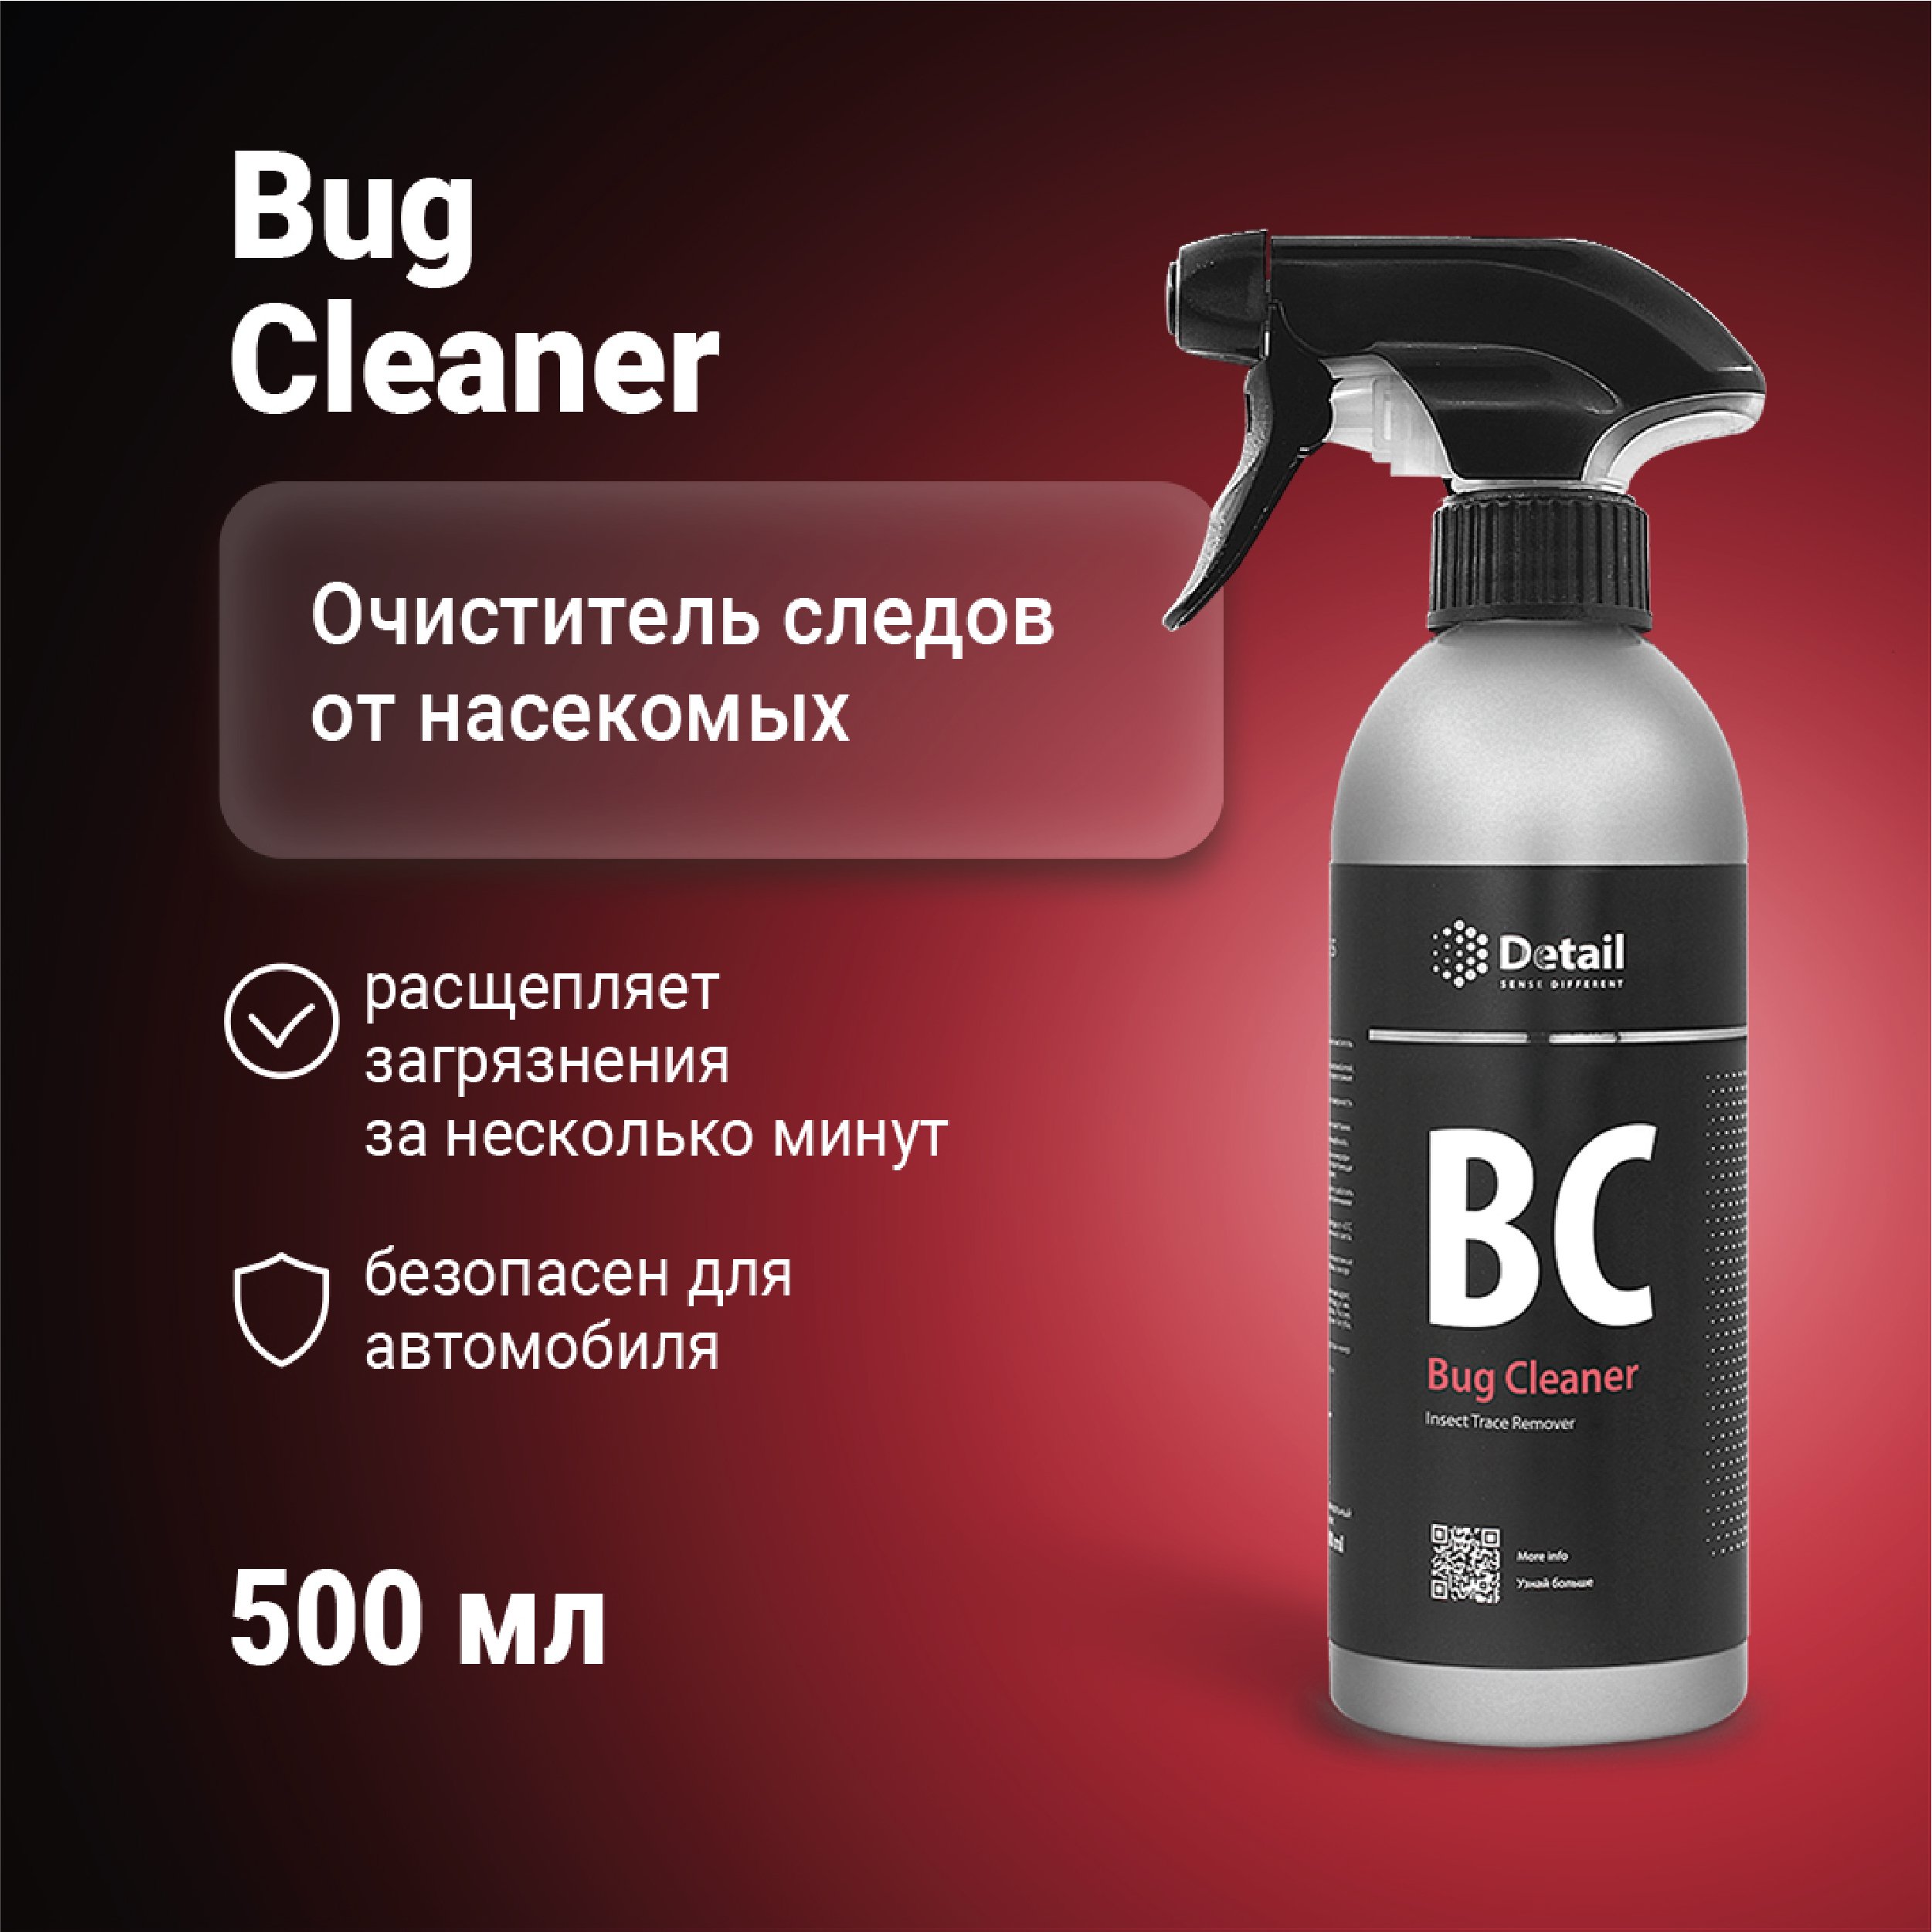 Очиститель следов насекомых Detail BC Bug Cleaner, 500 мл